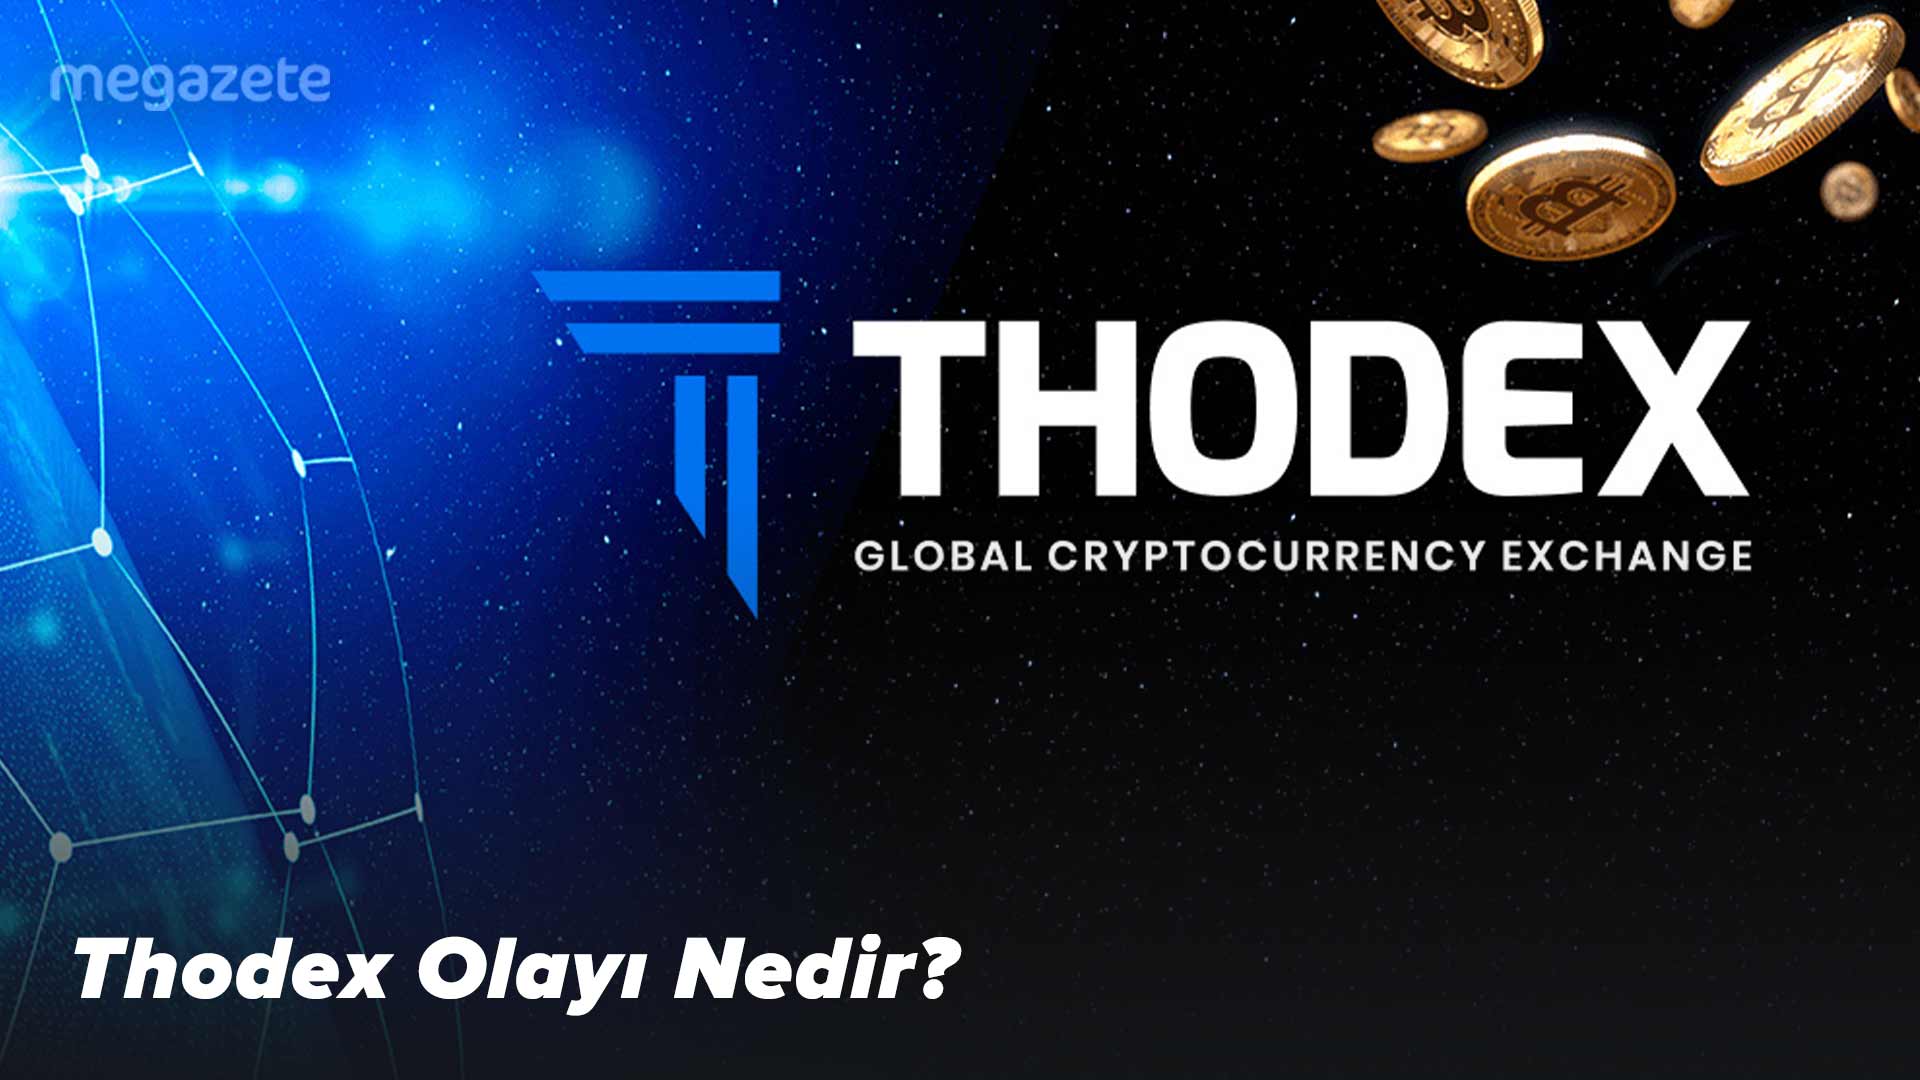 Thodex Olayı Nedir?